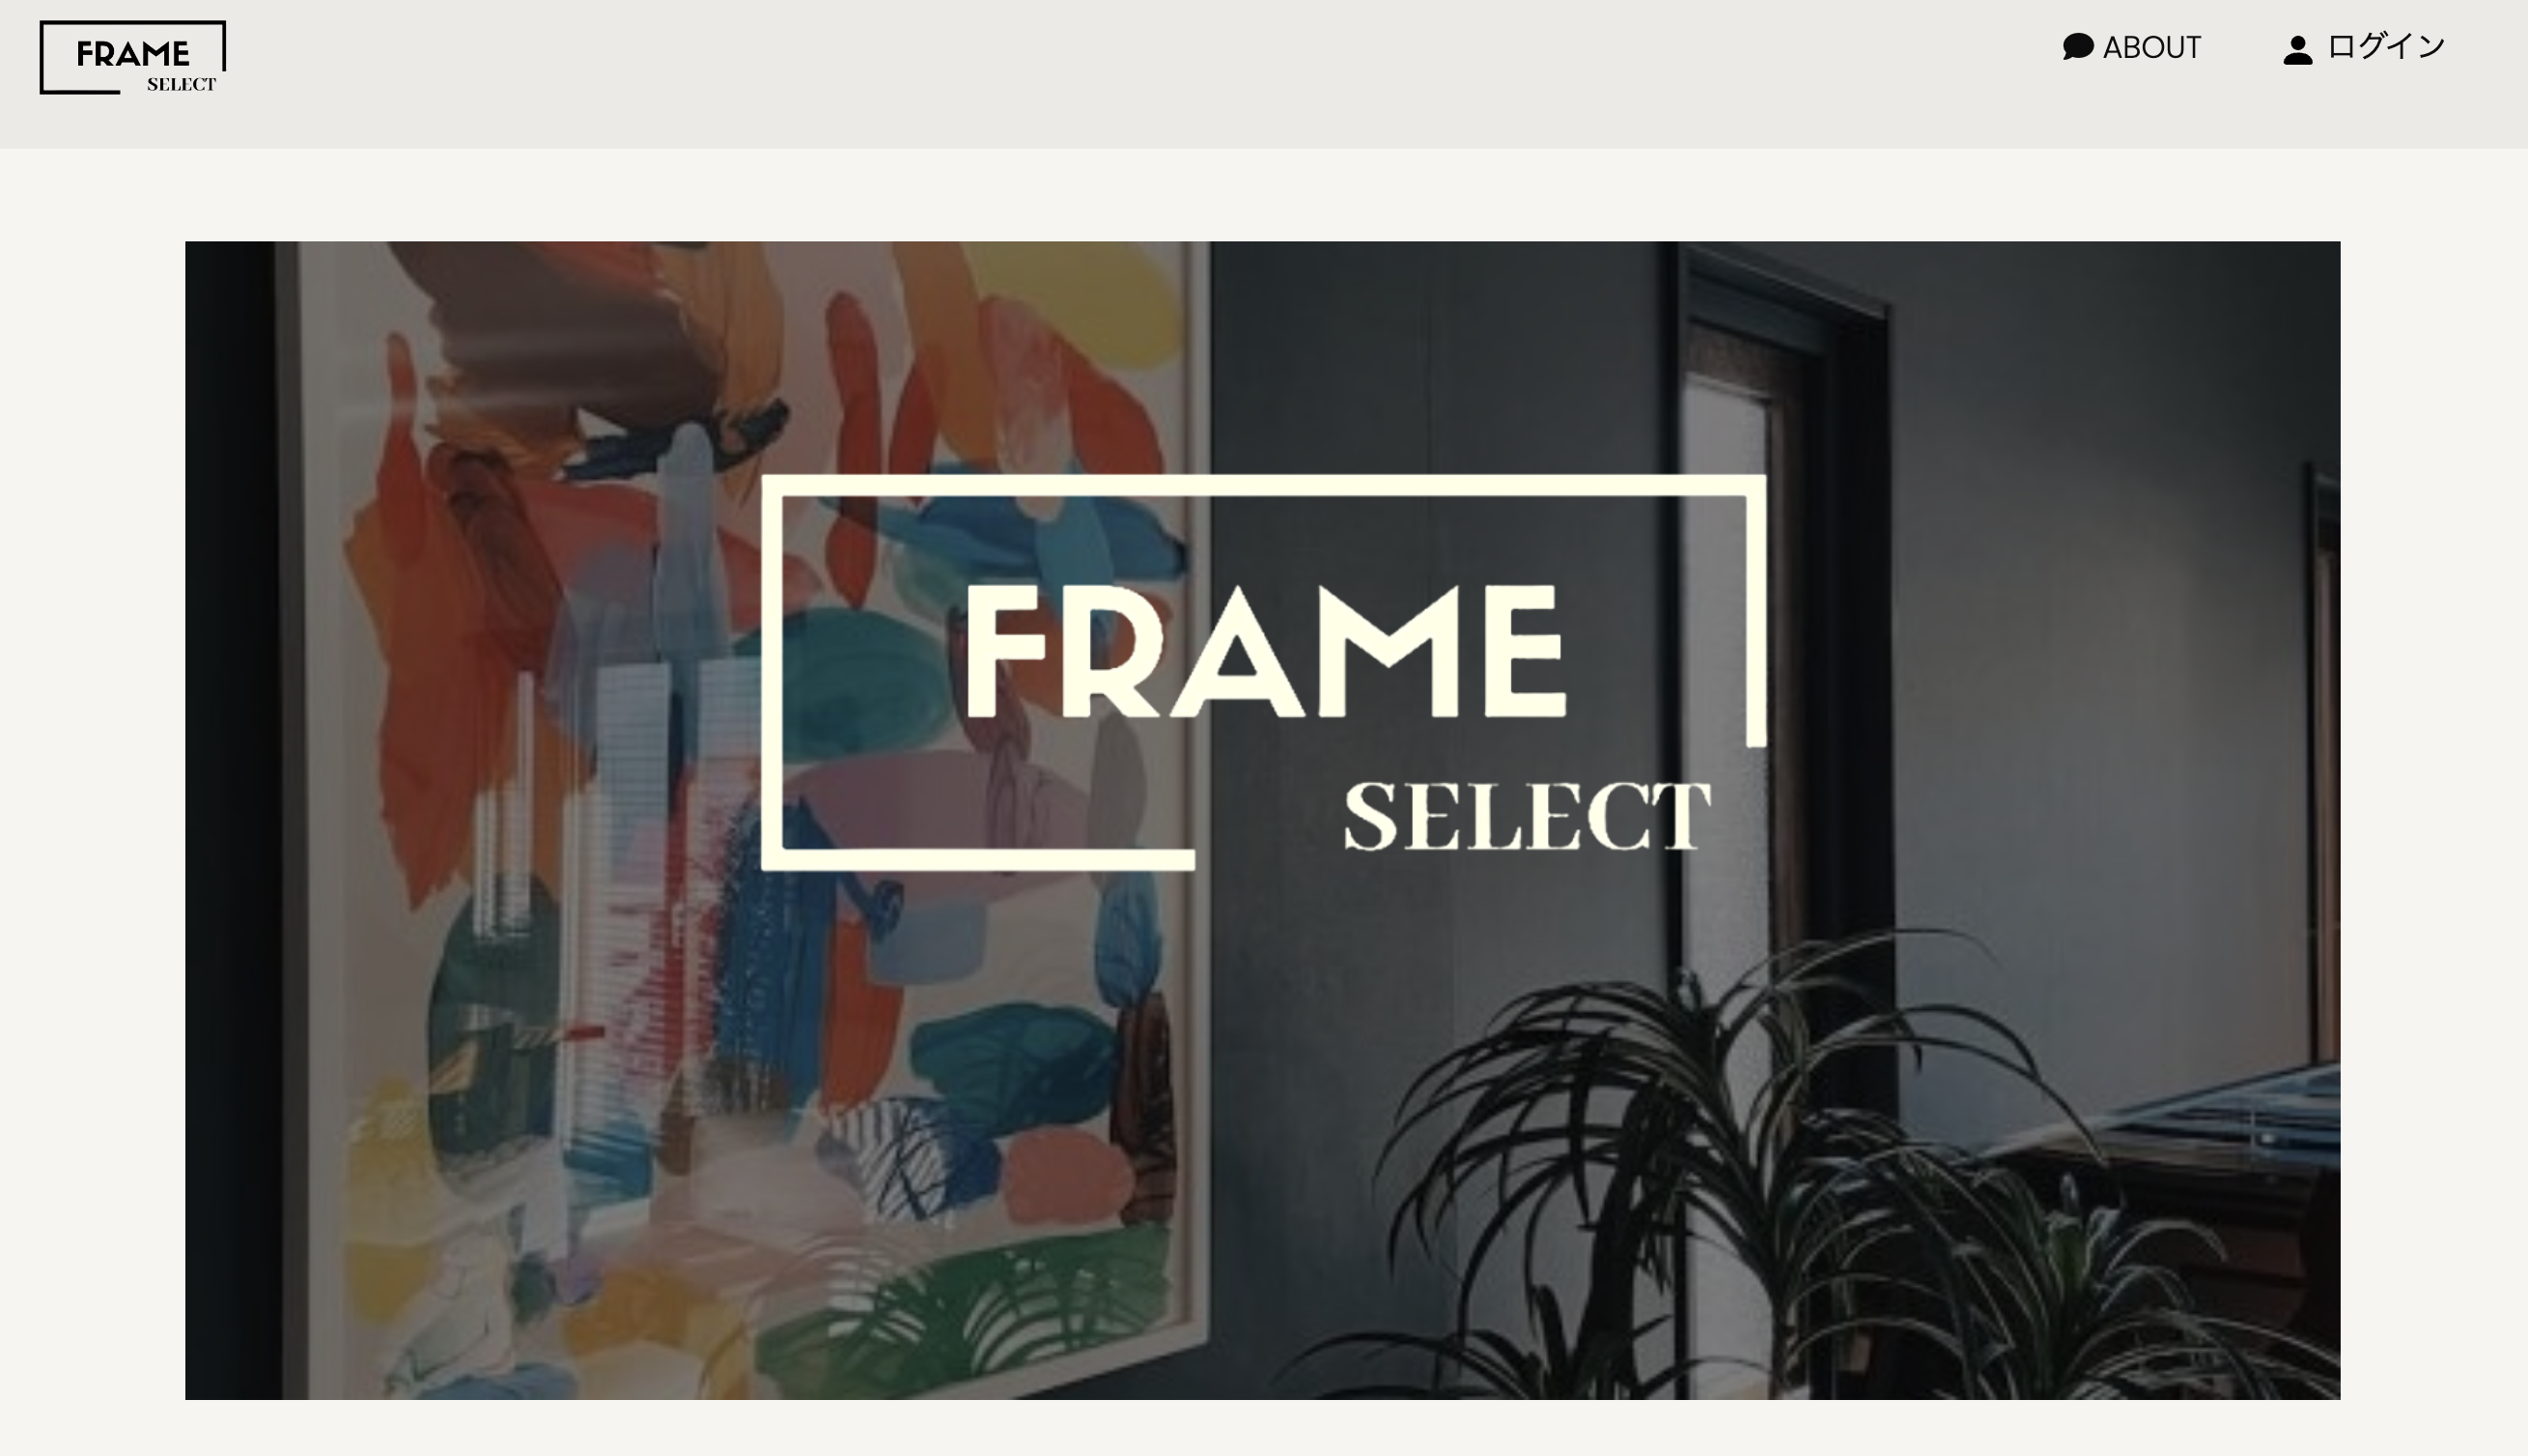 Frame Select